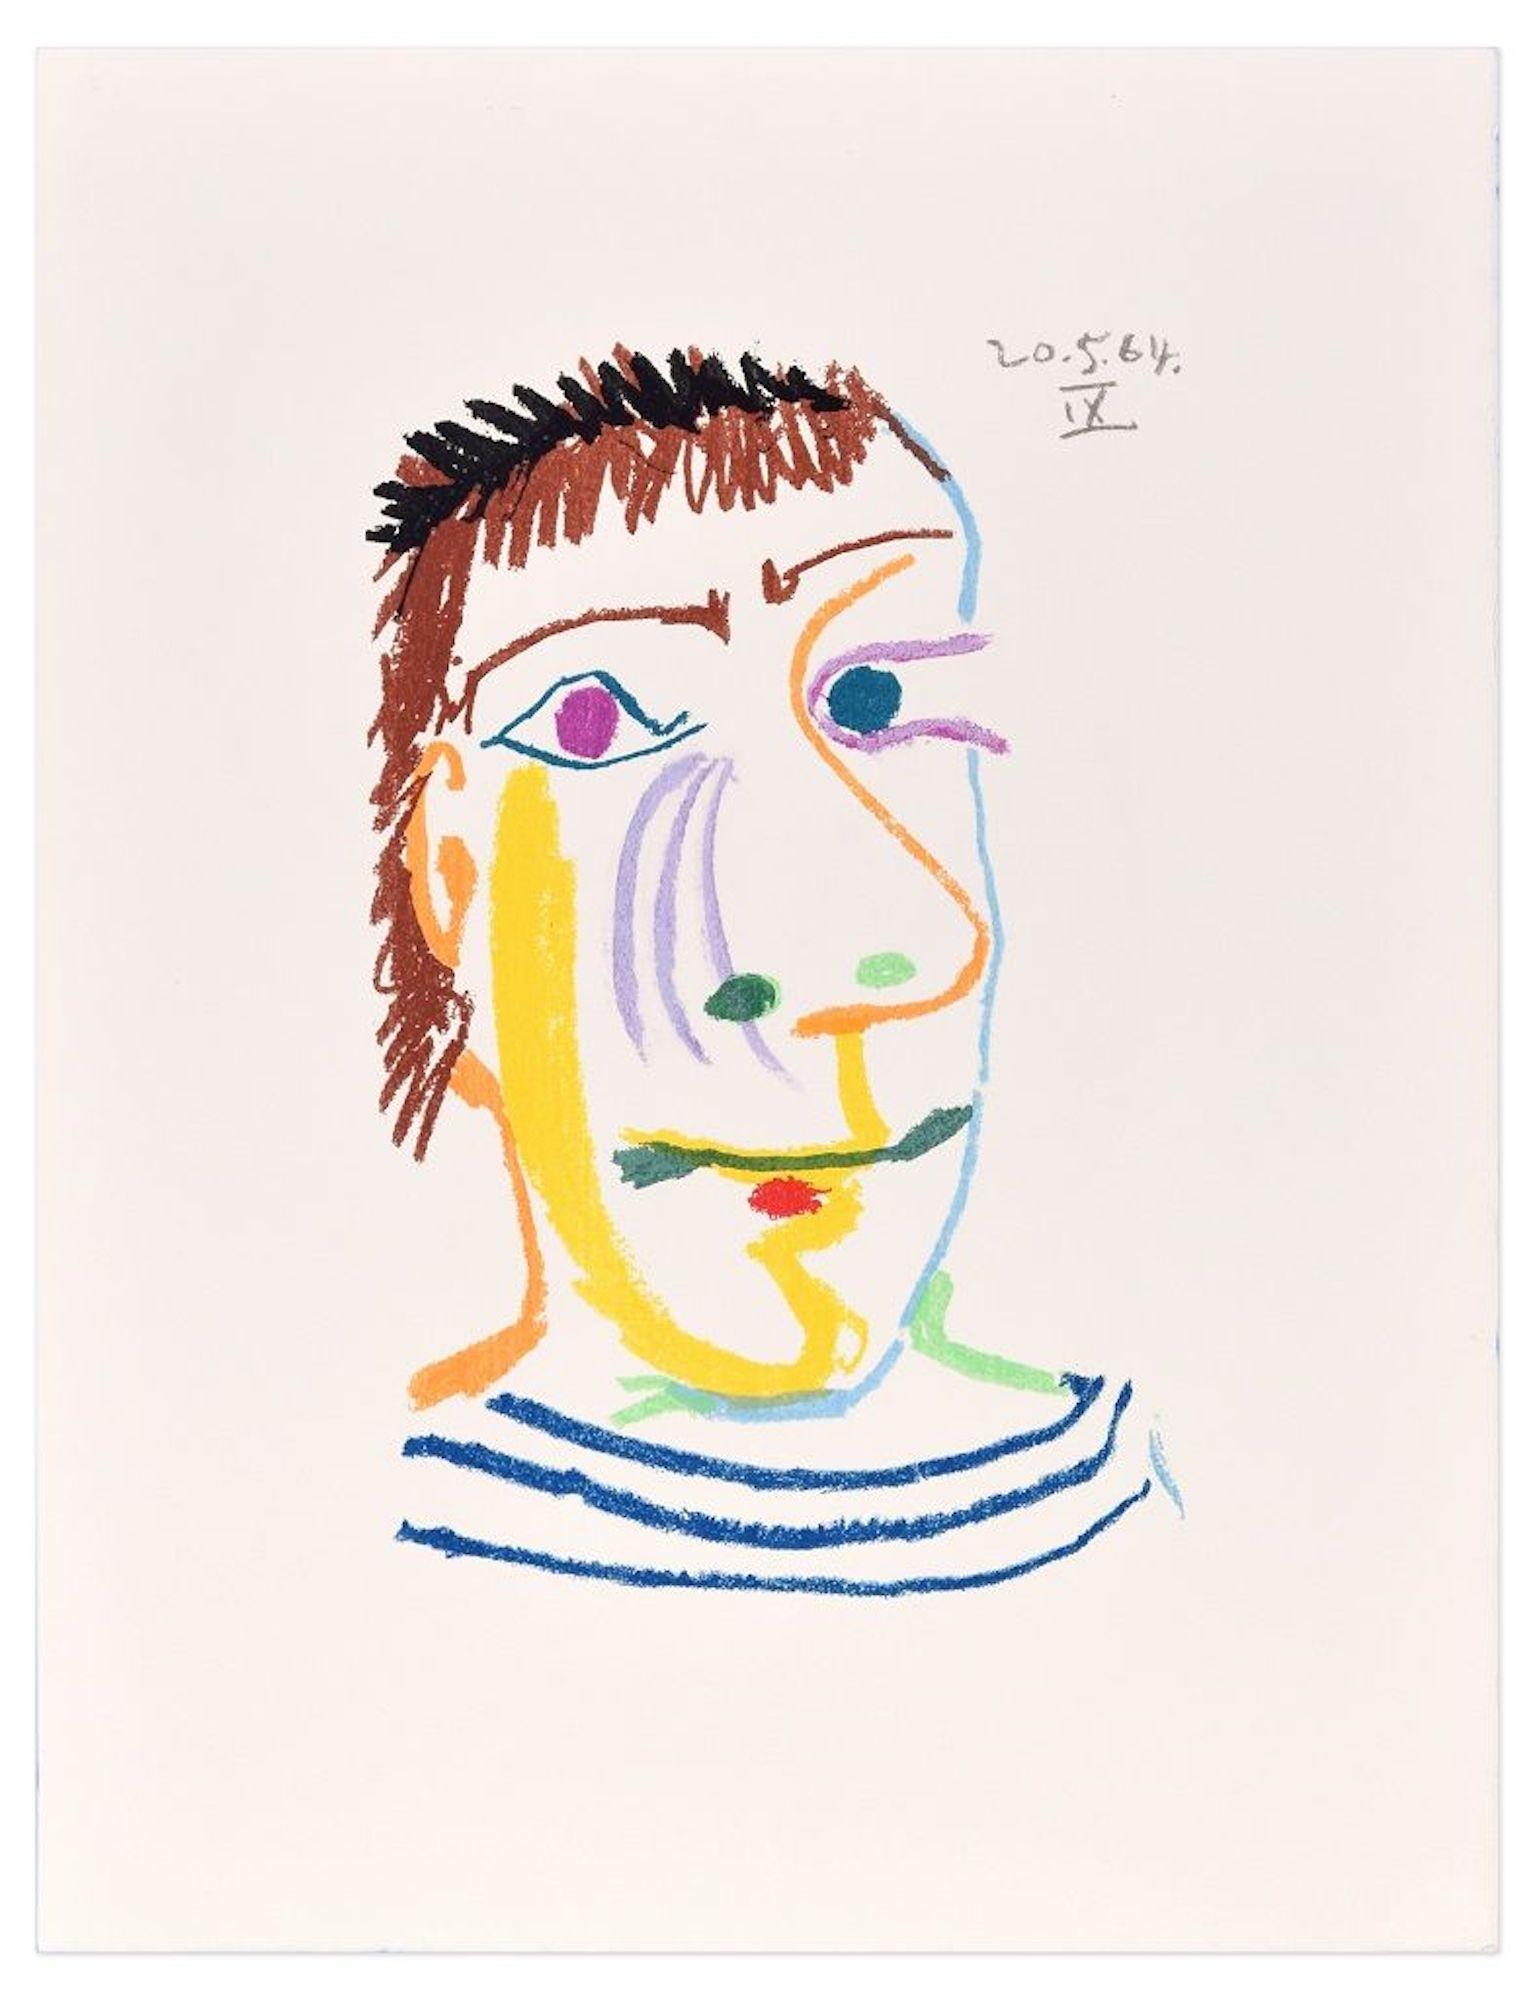 (after) Pablo Picasso Print - Le Goût du Bonheur - 20.5.64 IX - Lithograph After P. Picasso